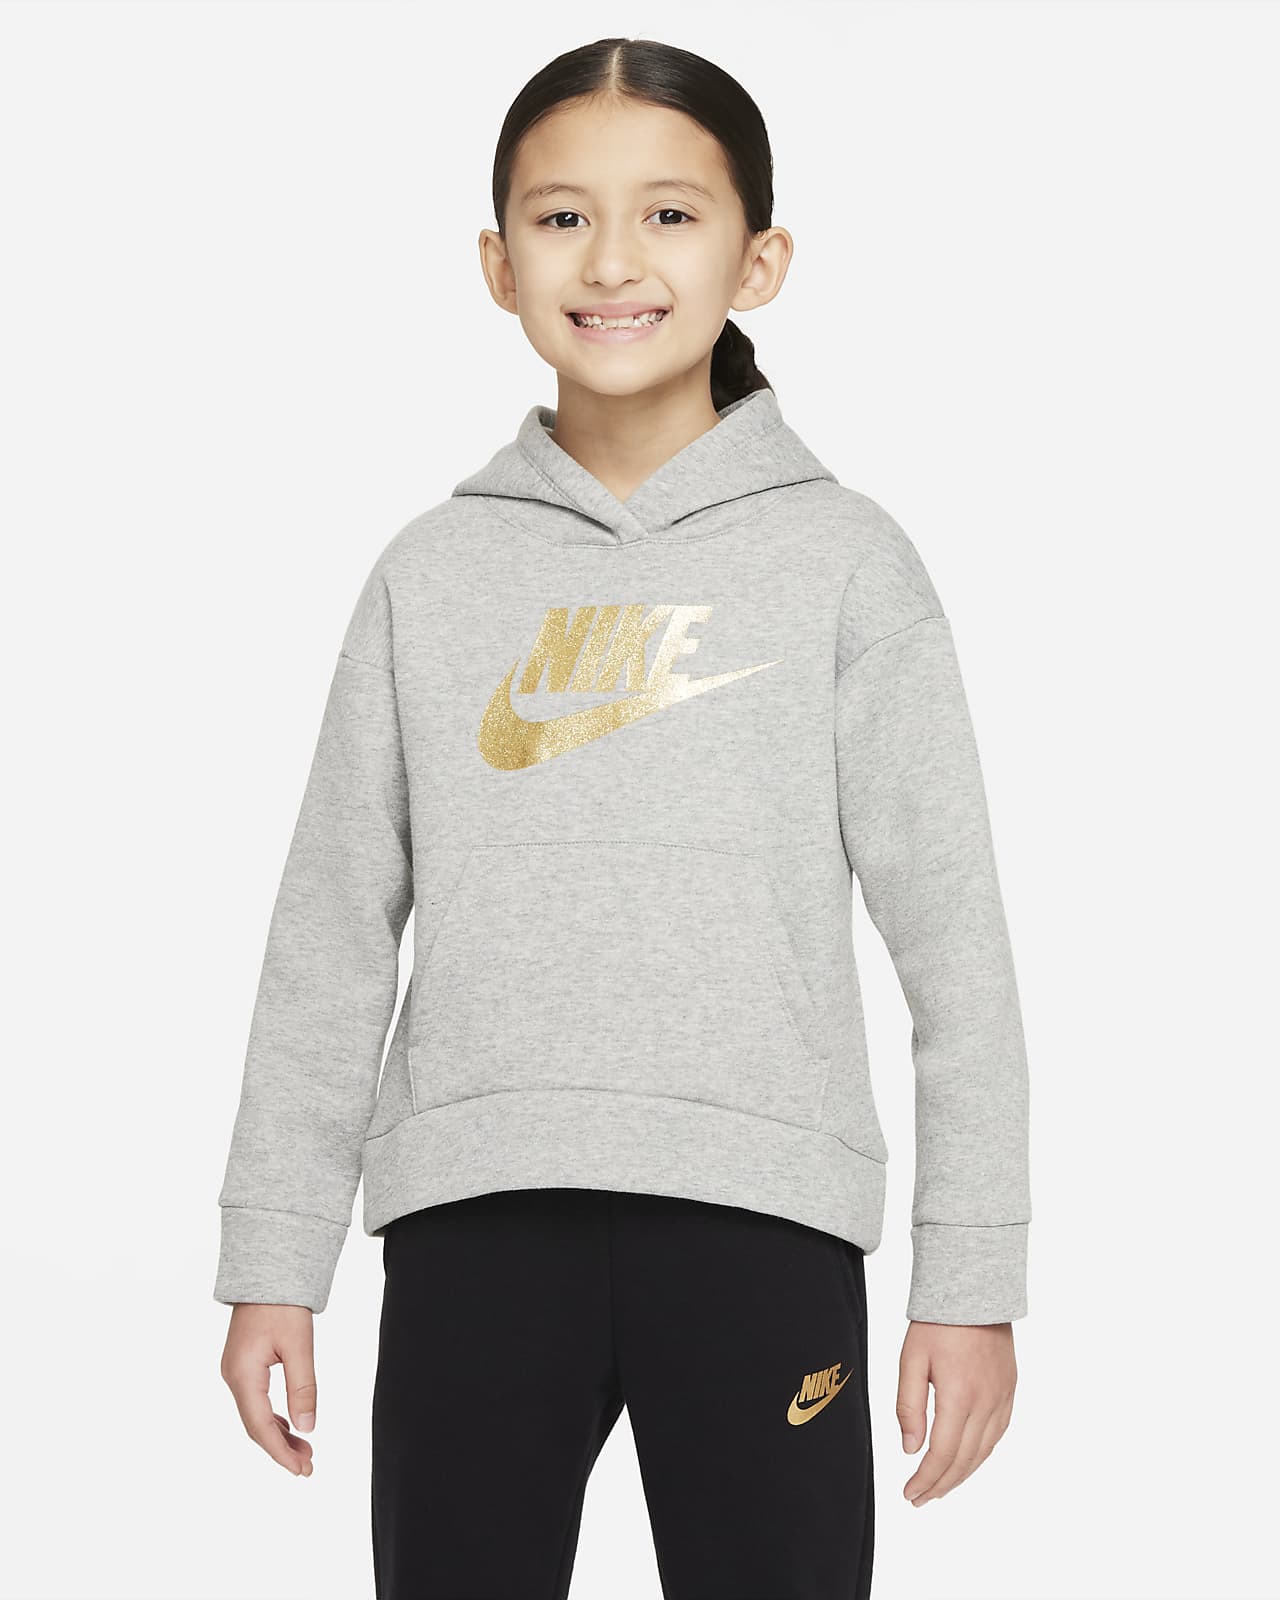 Μπλούζα με κουκούλα Nike για μικρά παιδιά